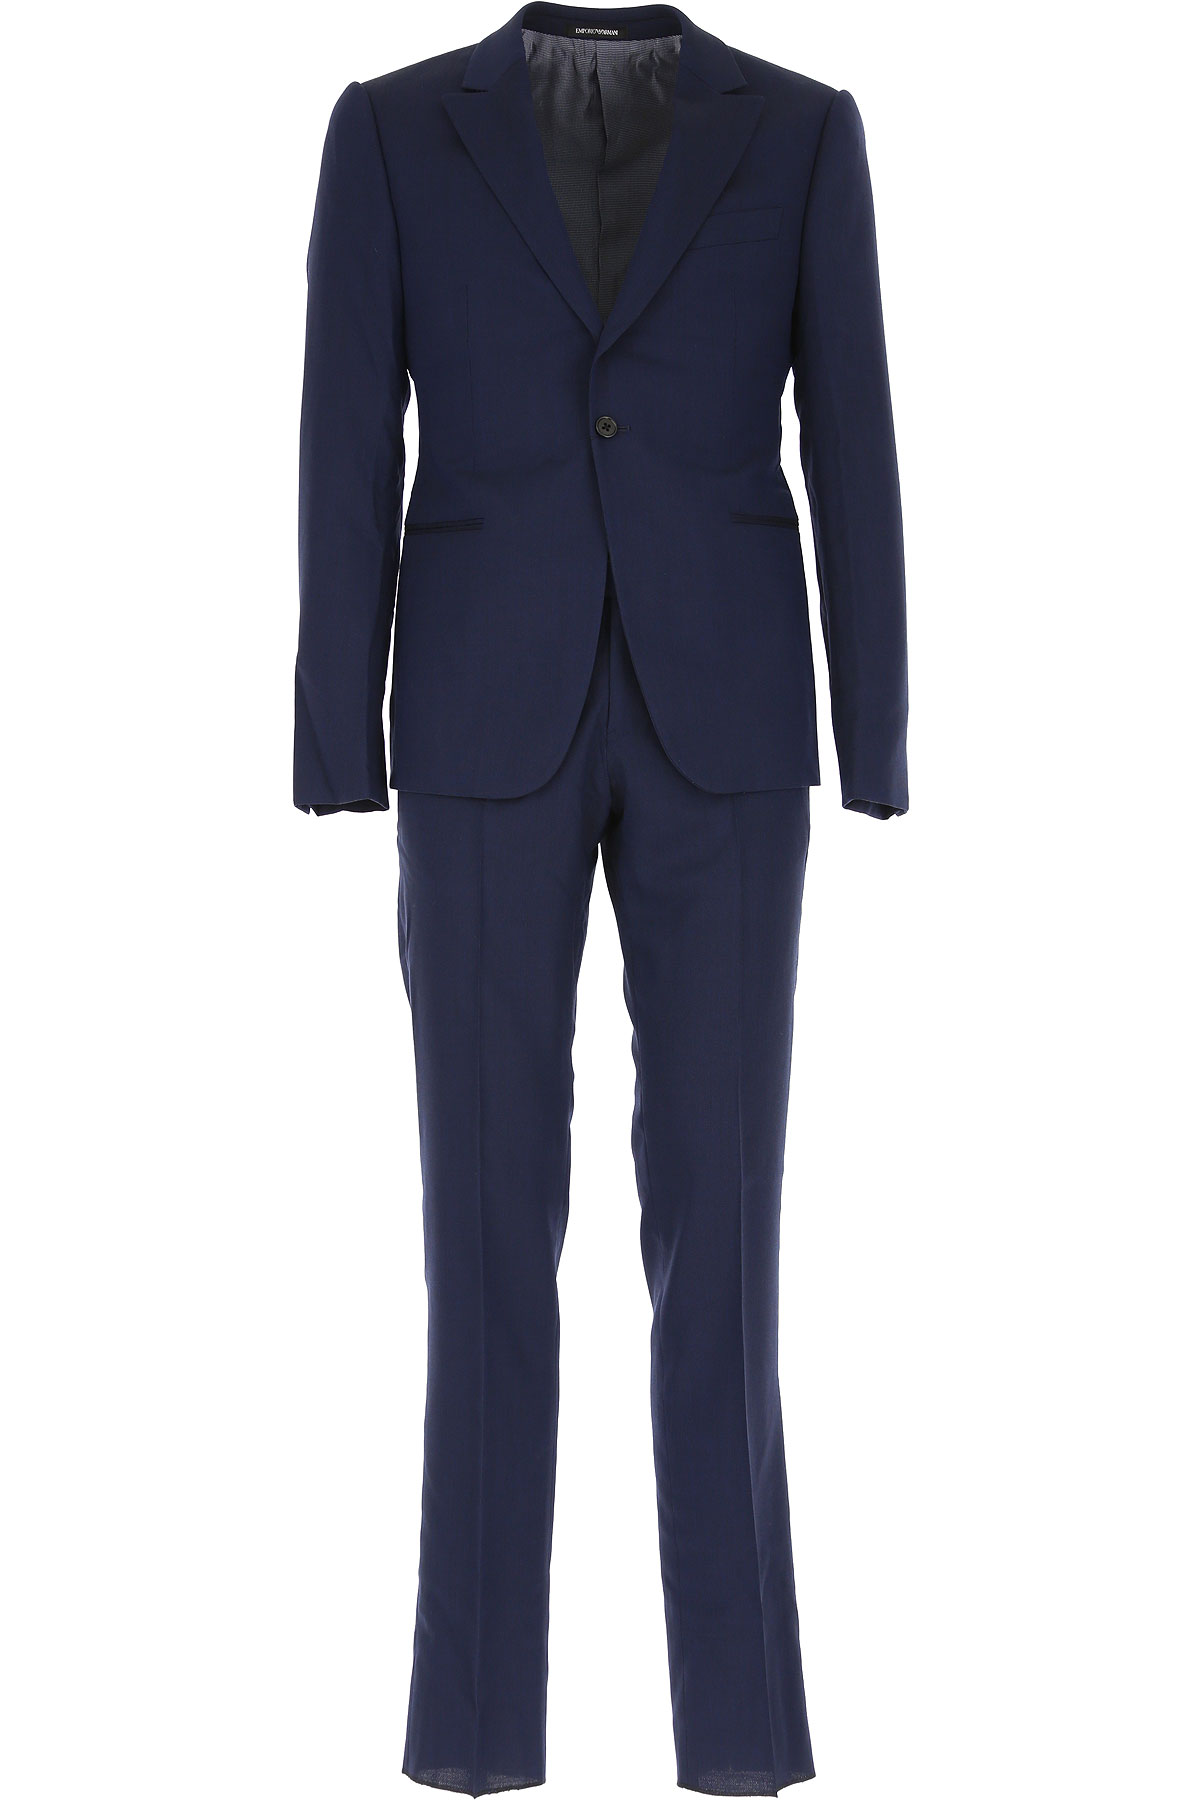 Emporio Armani Anzug für Herren Günstig im Sale, Blau, Baumwolle, 2017, L M